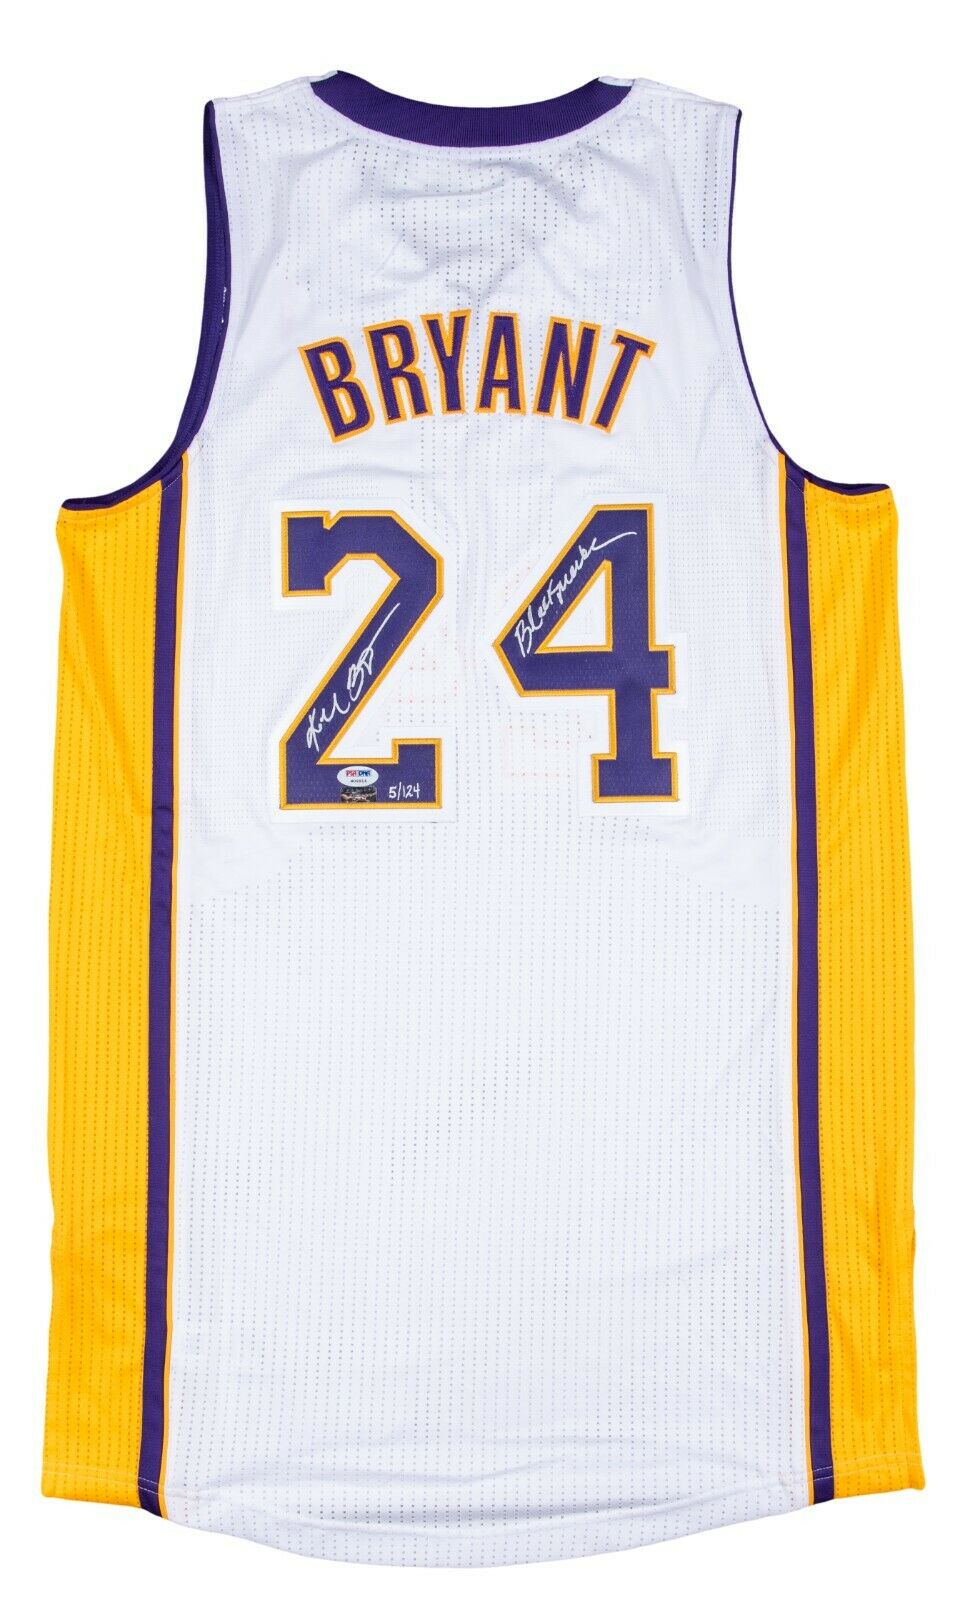 Kobe Bryant #24 Black and Purple Jersey Black Mamba Limited